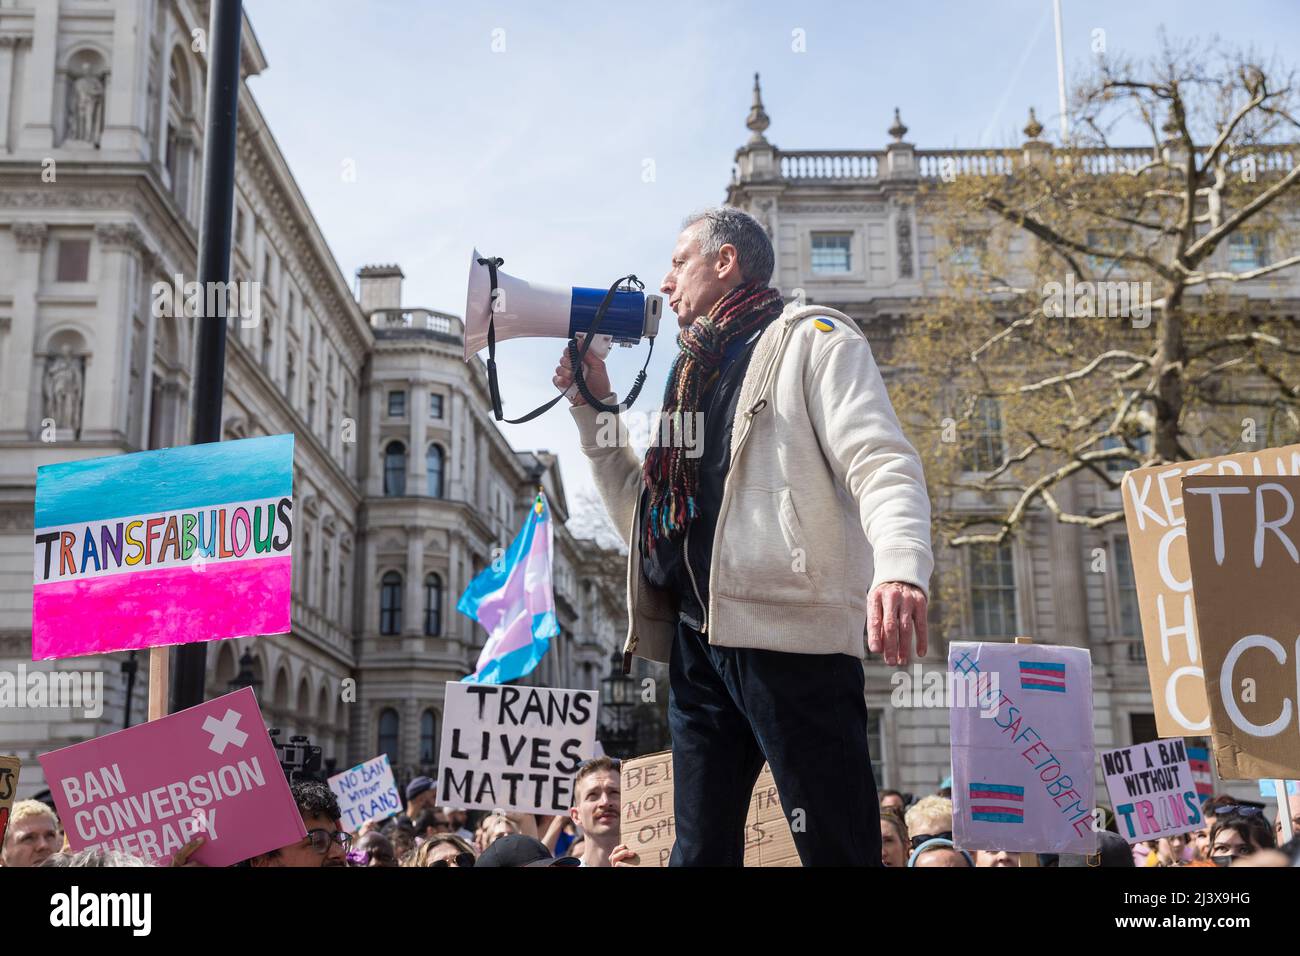 Peter Tatchell s'exprimant lors d'une manifestation demandant l'interdiction de la thérapie de conversion - Whitehall, Londres Banque D'Images